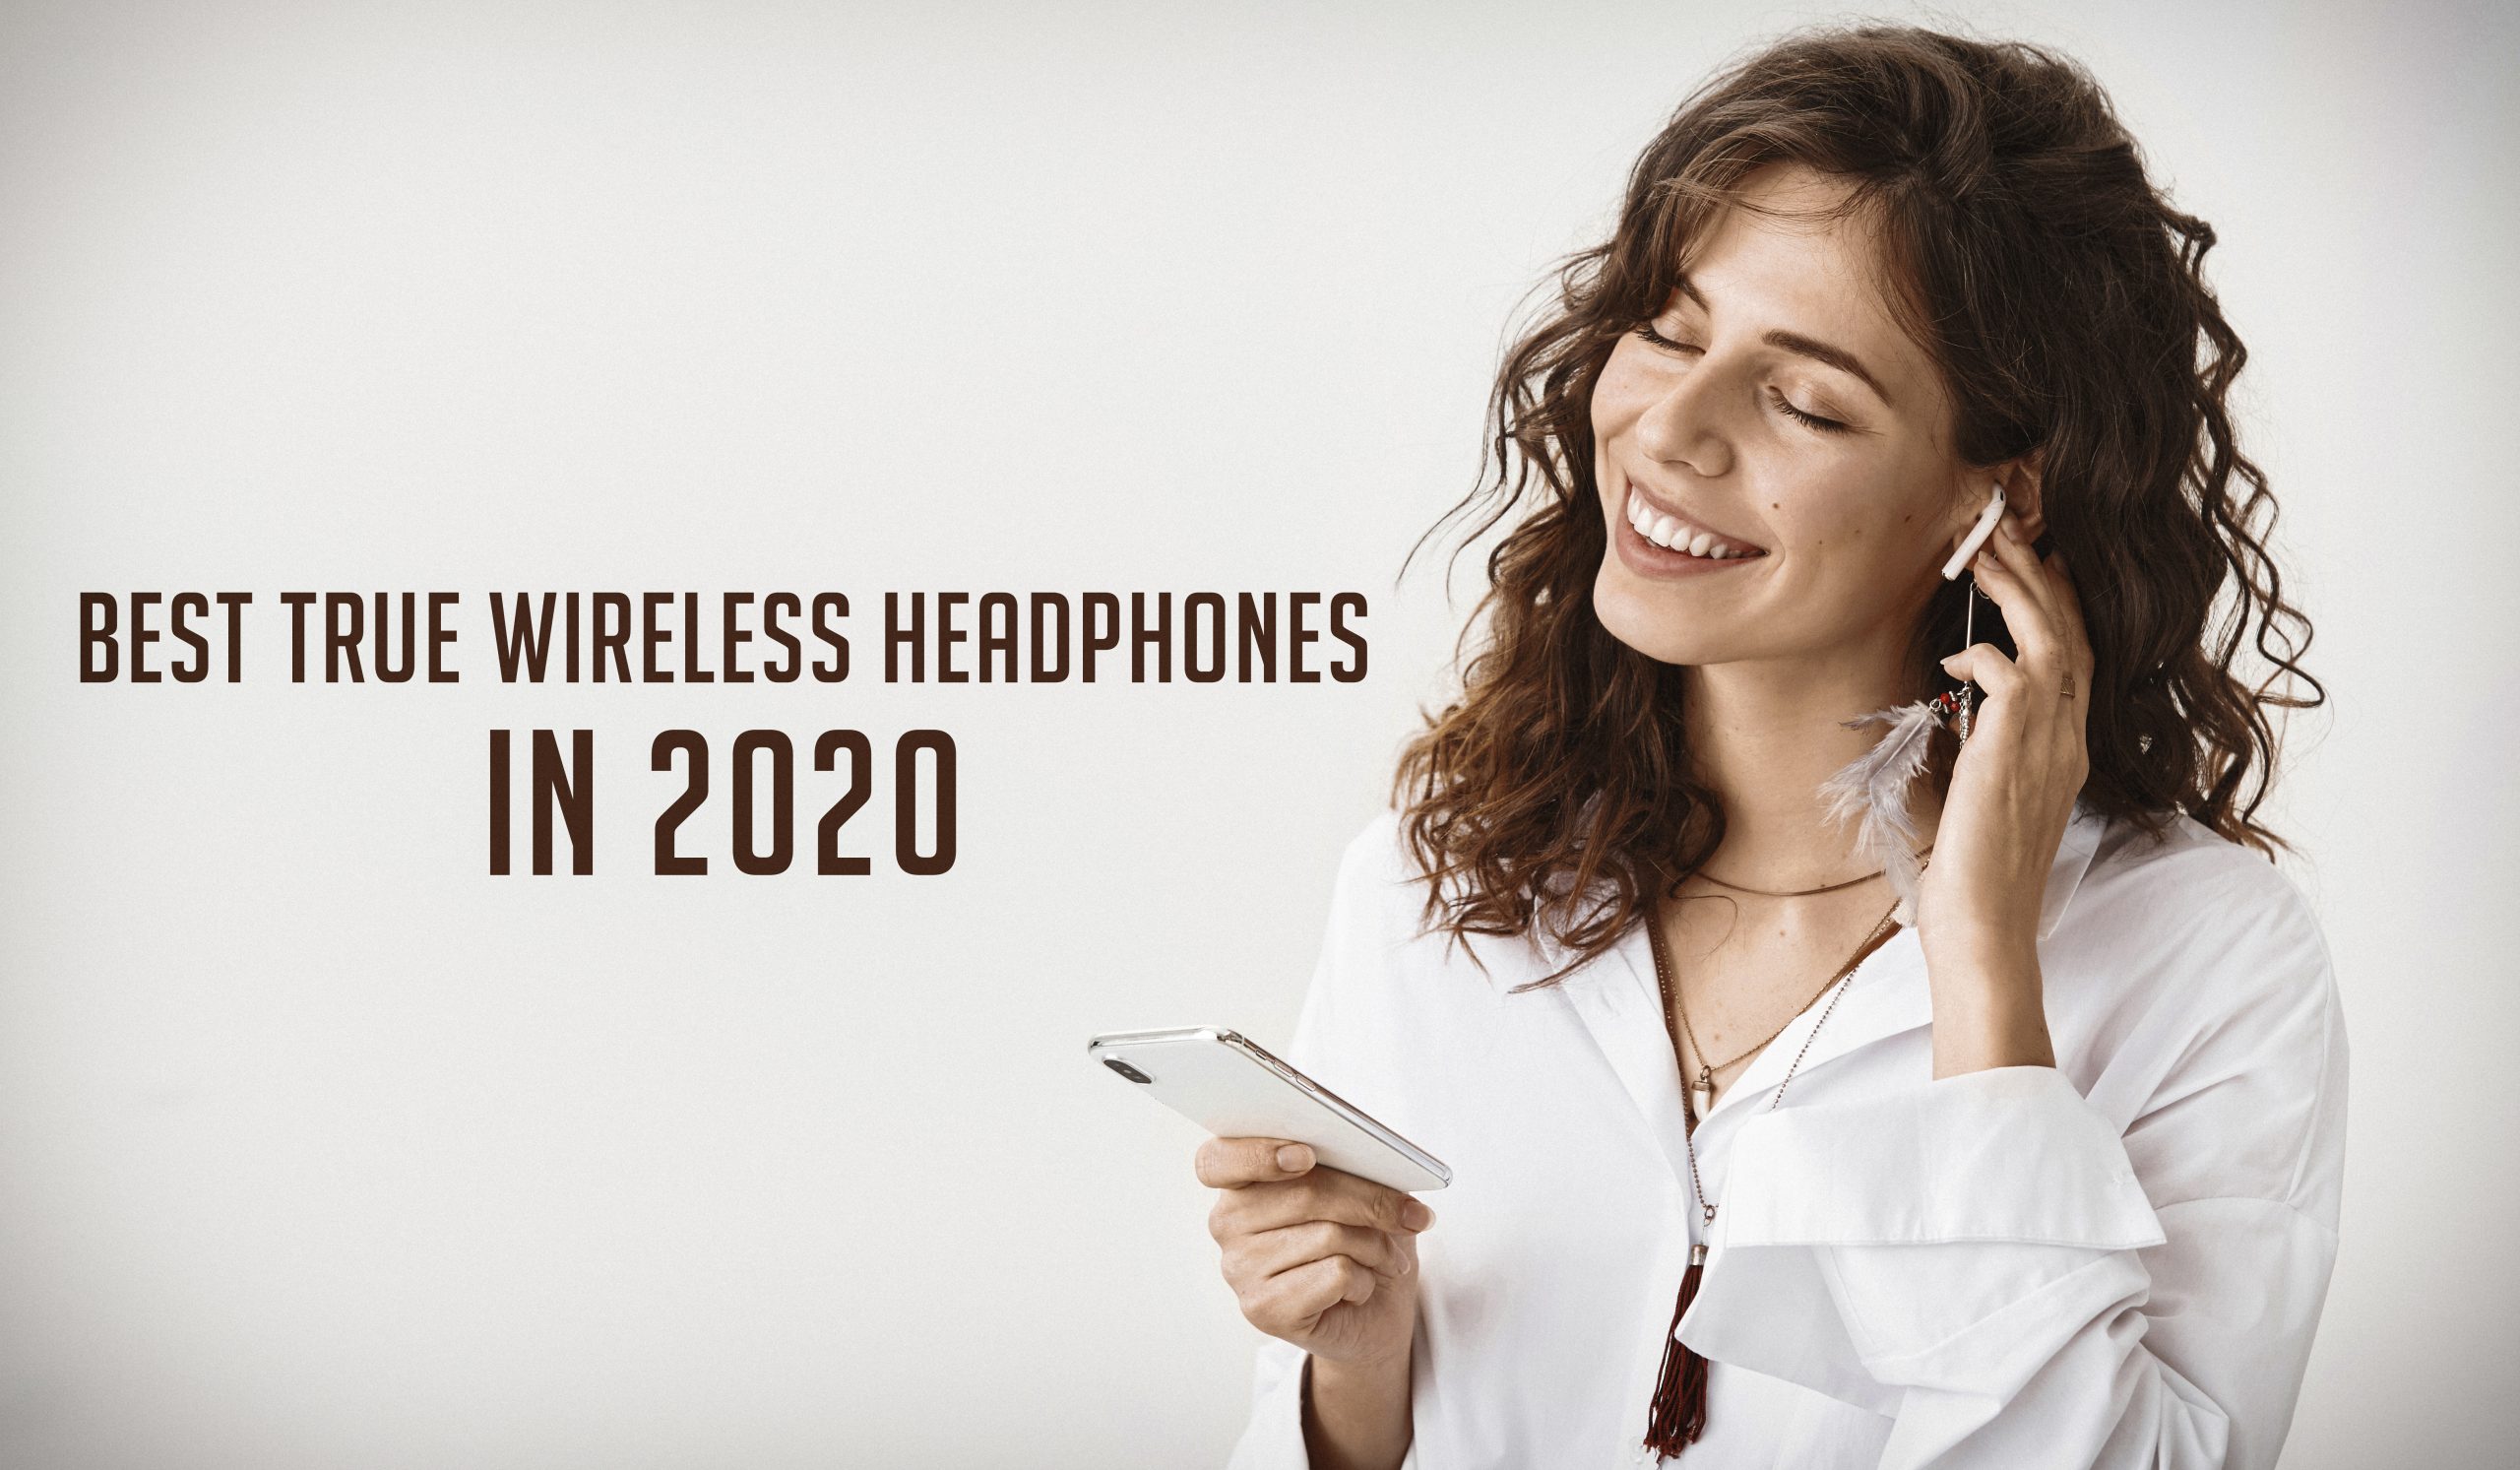 Best True Wireless Headphones in 2020